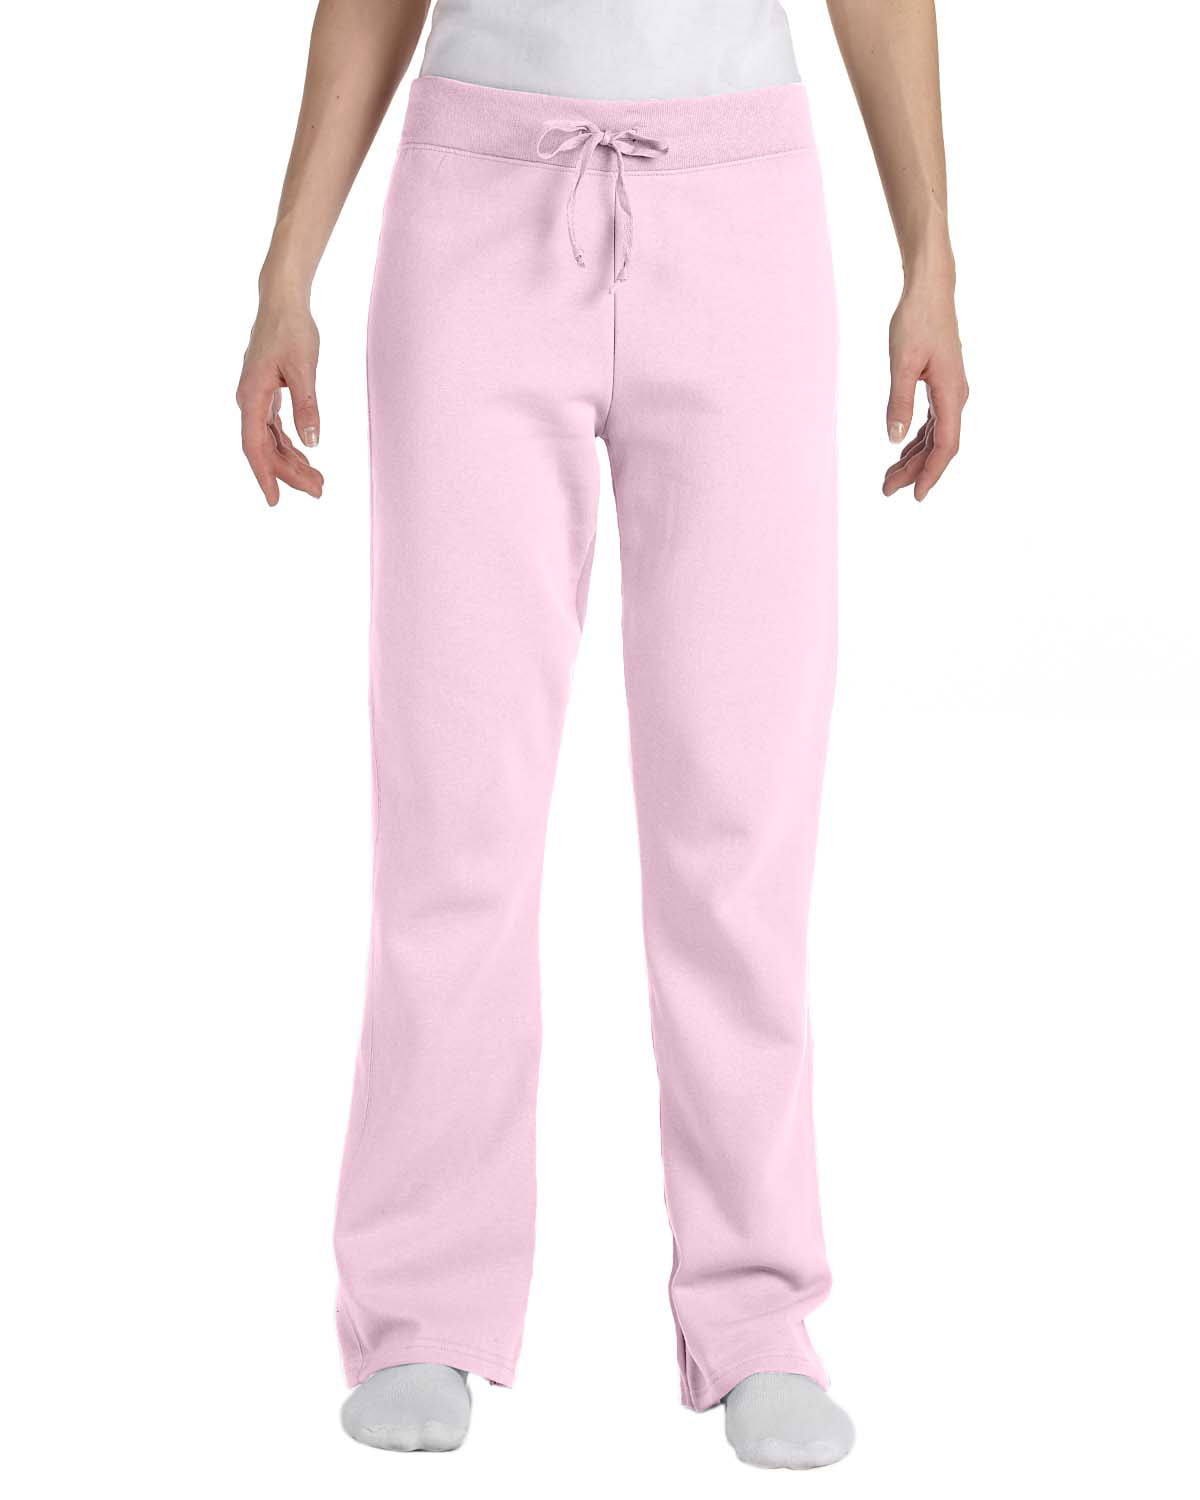 Hanes - W550 Ecosmart Cotton-Rich Women Drawstring Sweatpants Size 2 ...